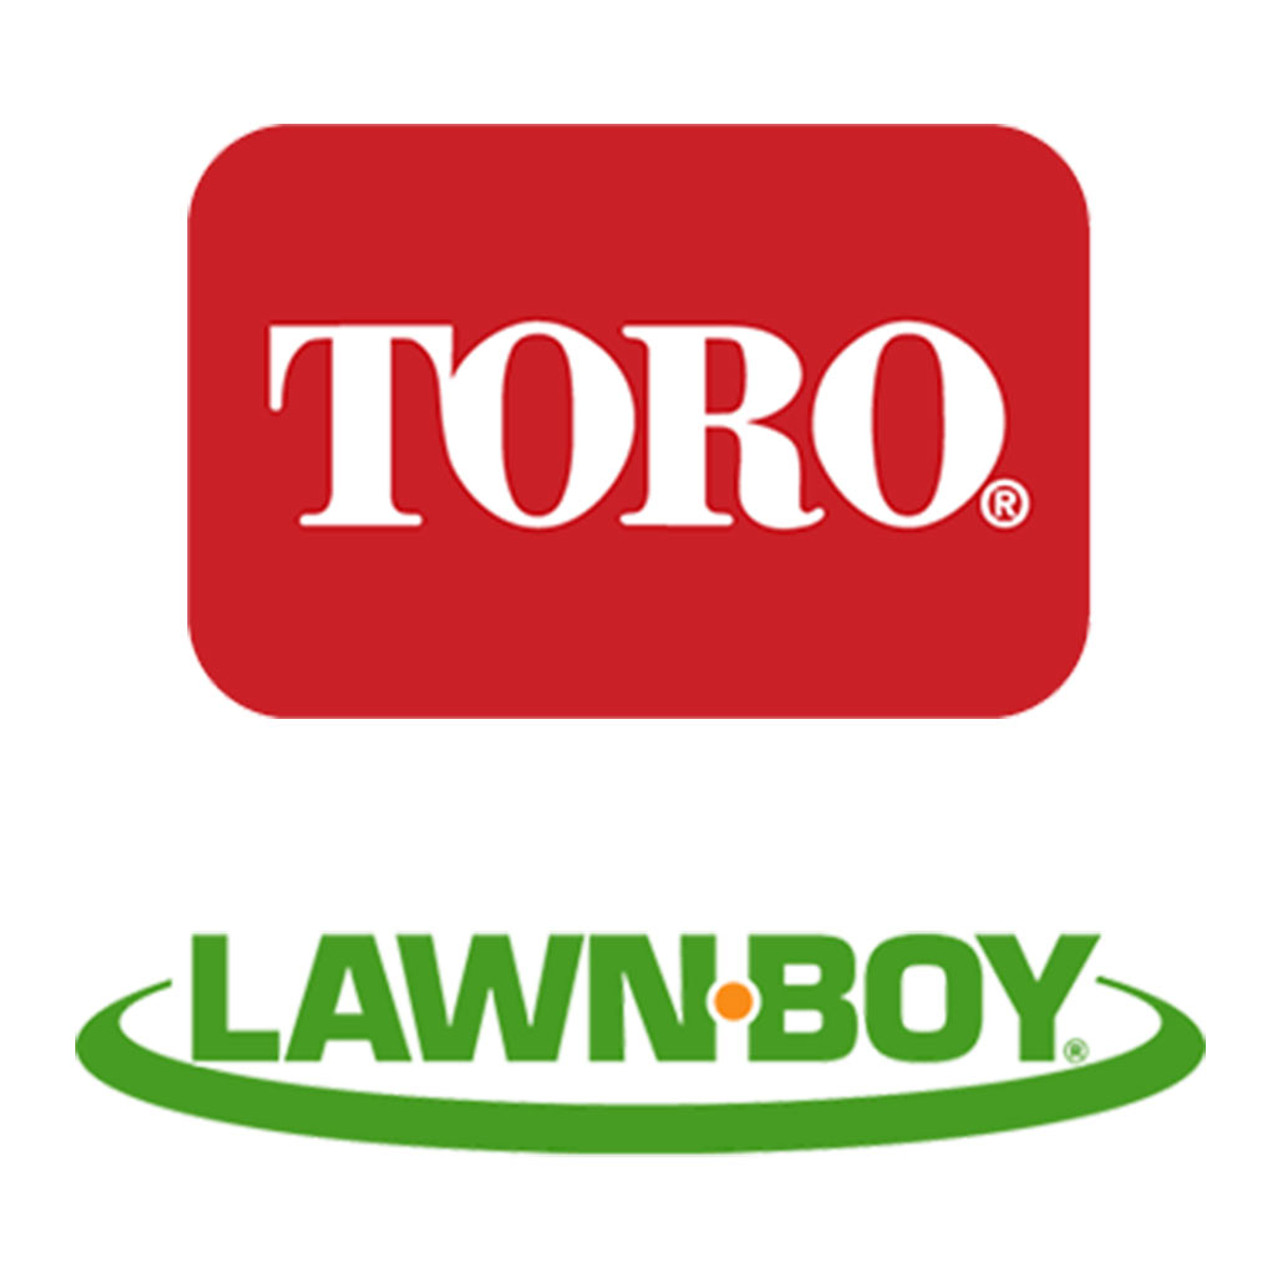 Toro Lawn-Boy 139-2614 Pin-Cotter